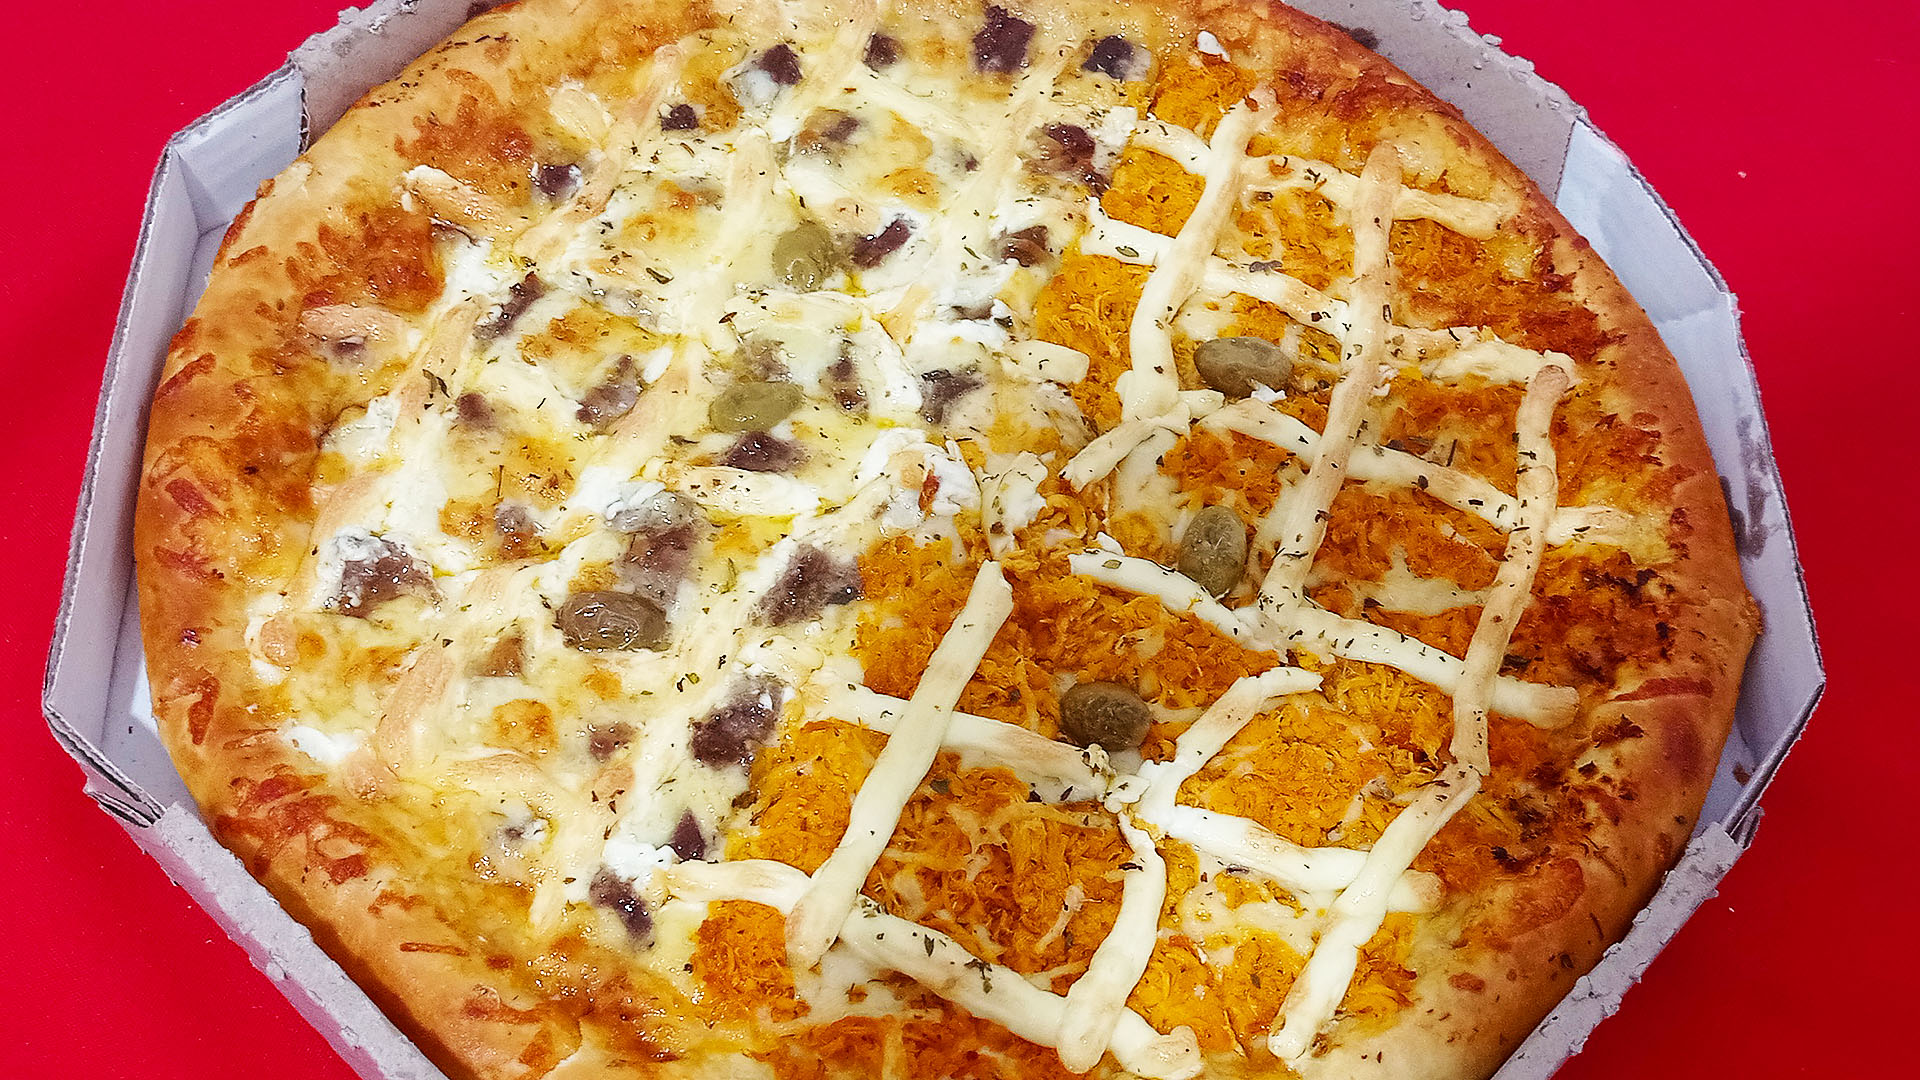 Pensando em #Pizza 🍕 hoje? Meia #frangocomcatupiry e meia #filécomcatupiry da #reidapizzaczs